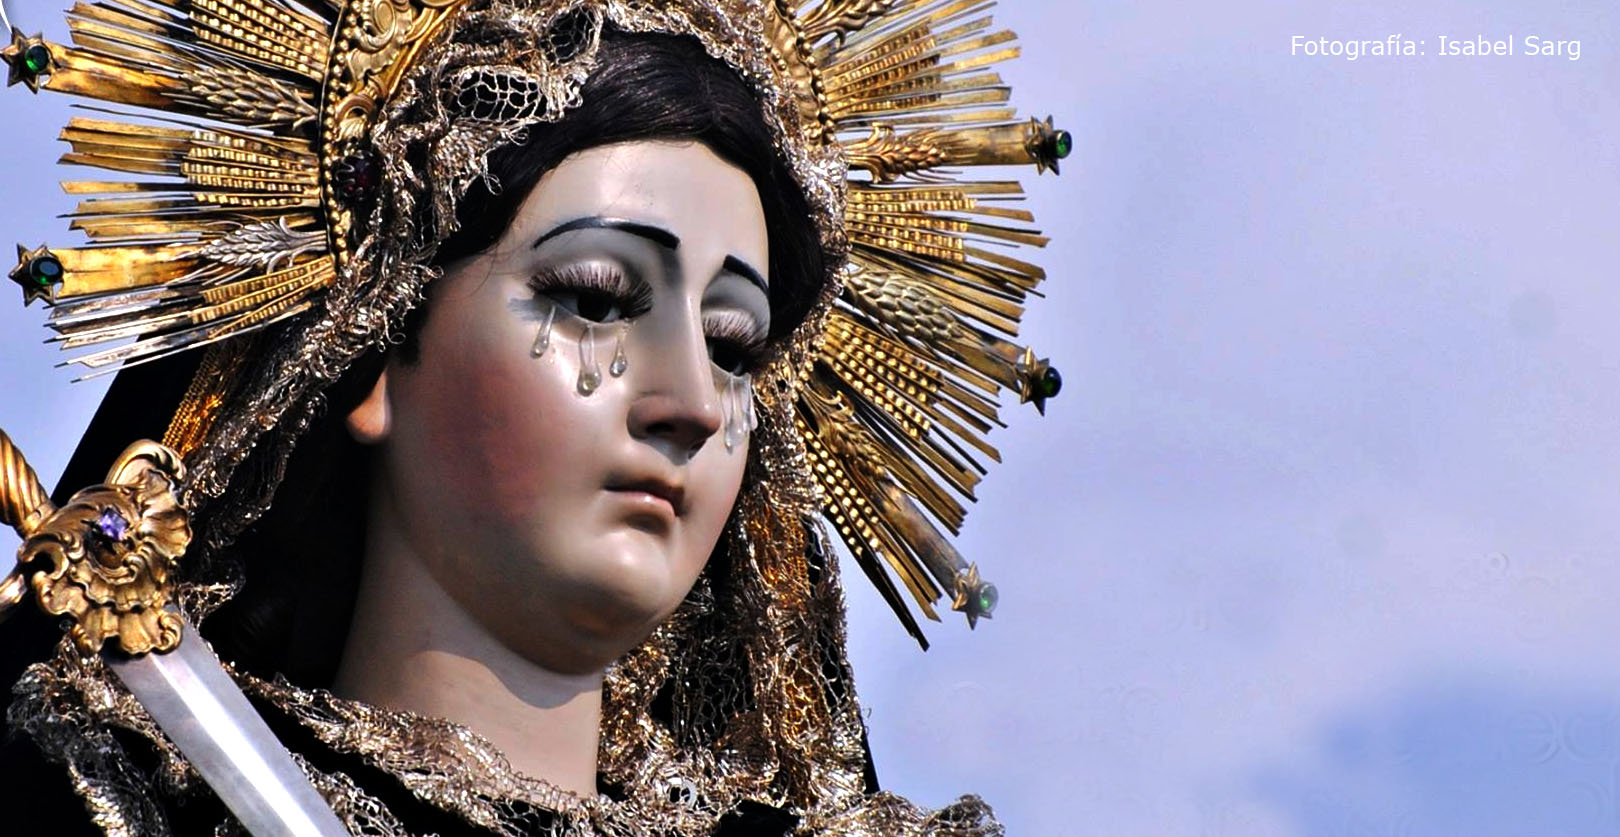 Consagrada y Coronada imagen de la Virgen de Soledad de Xela